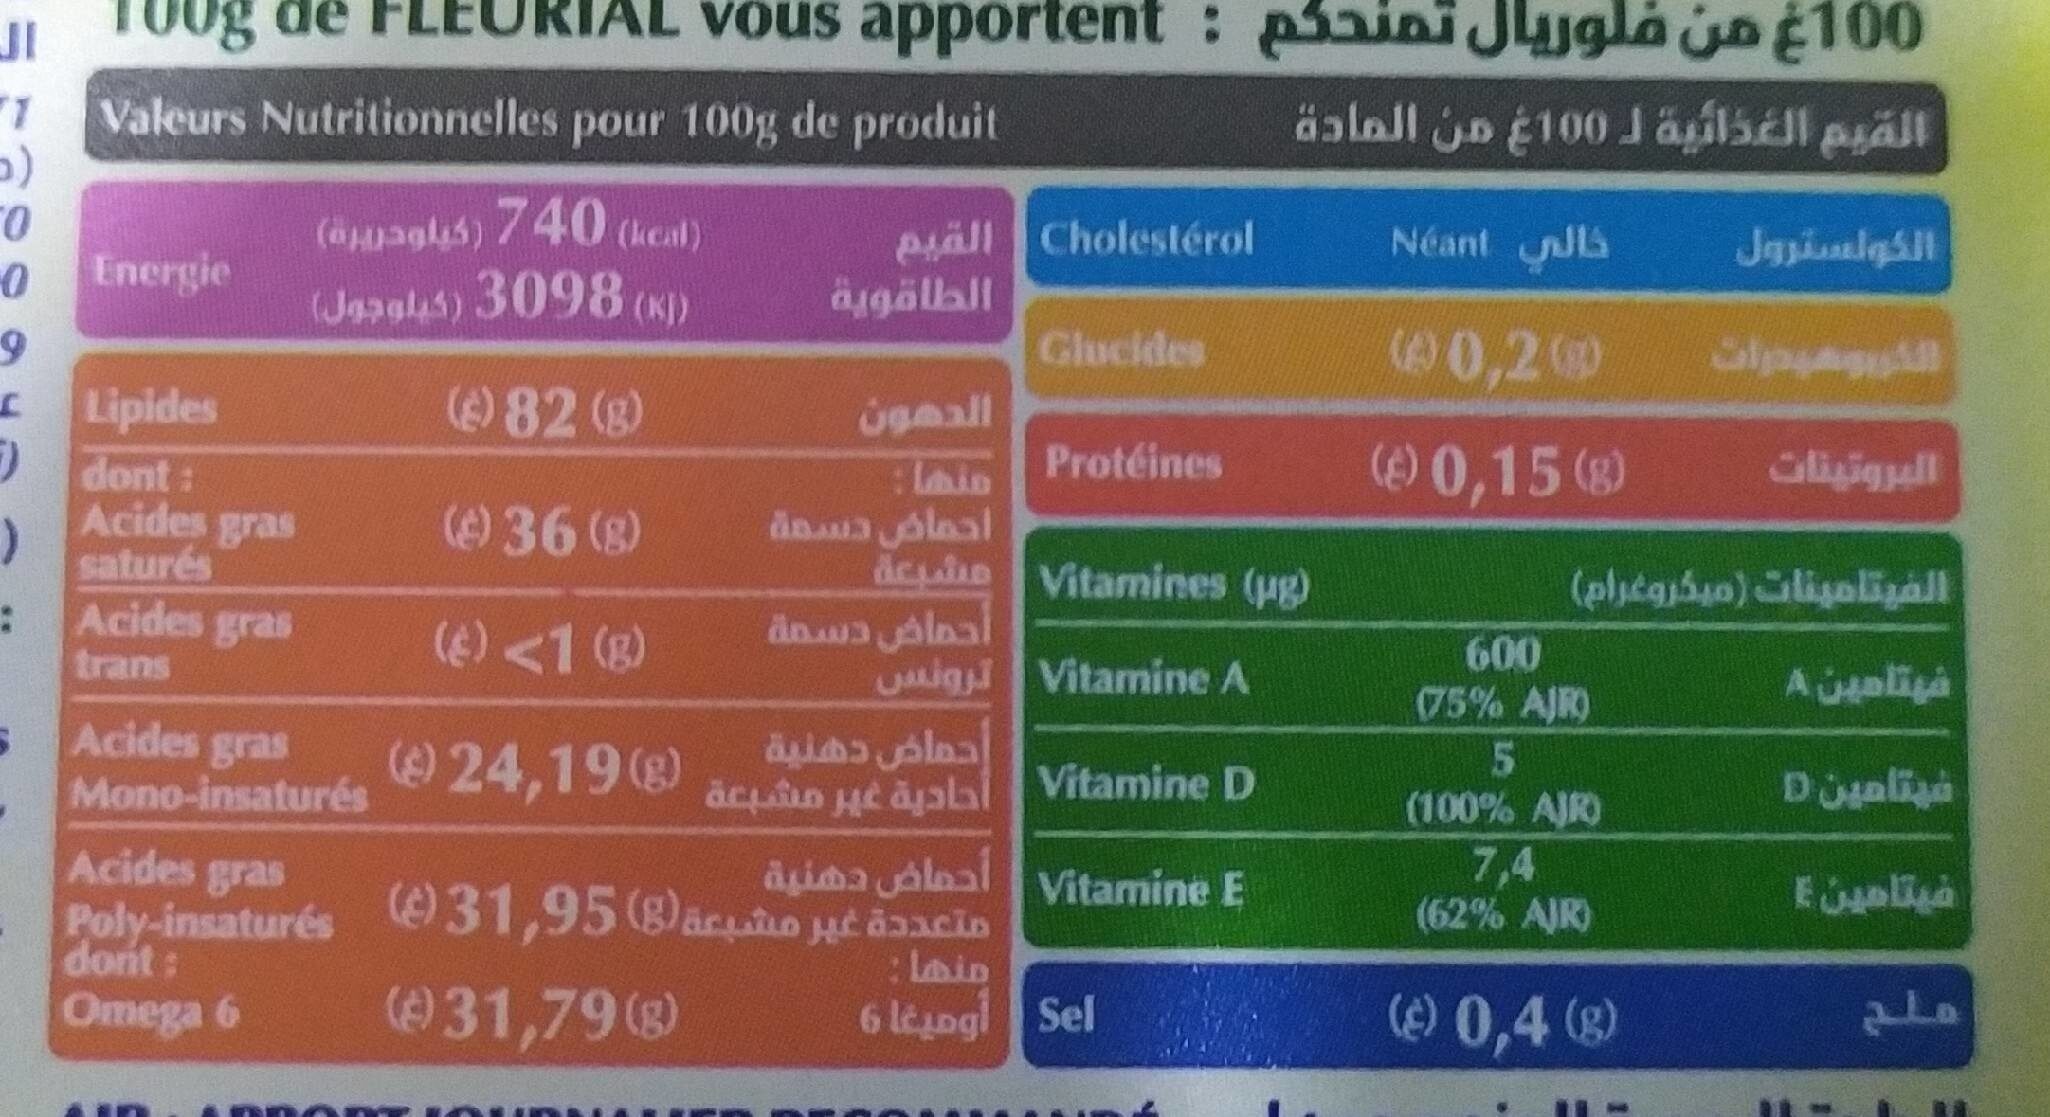 Fleurial - Voedingswaarden - fr